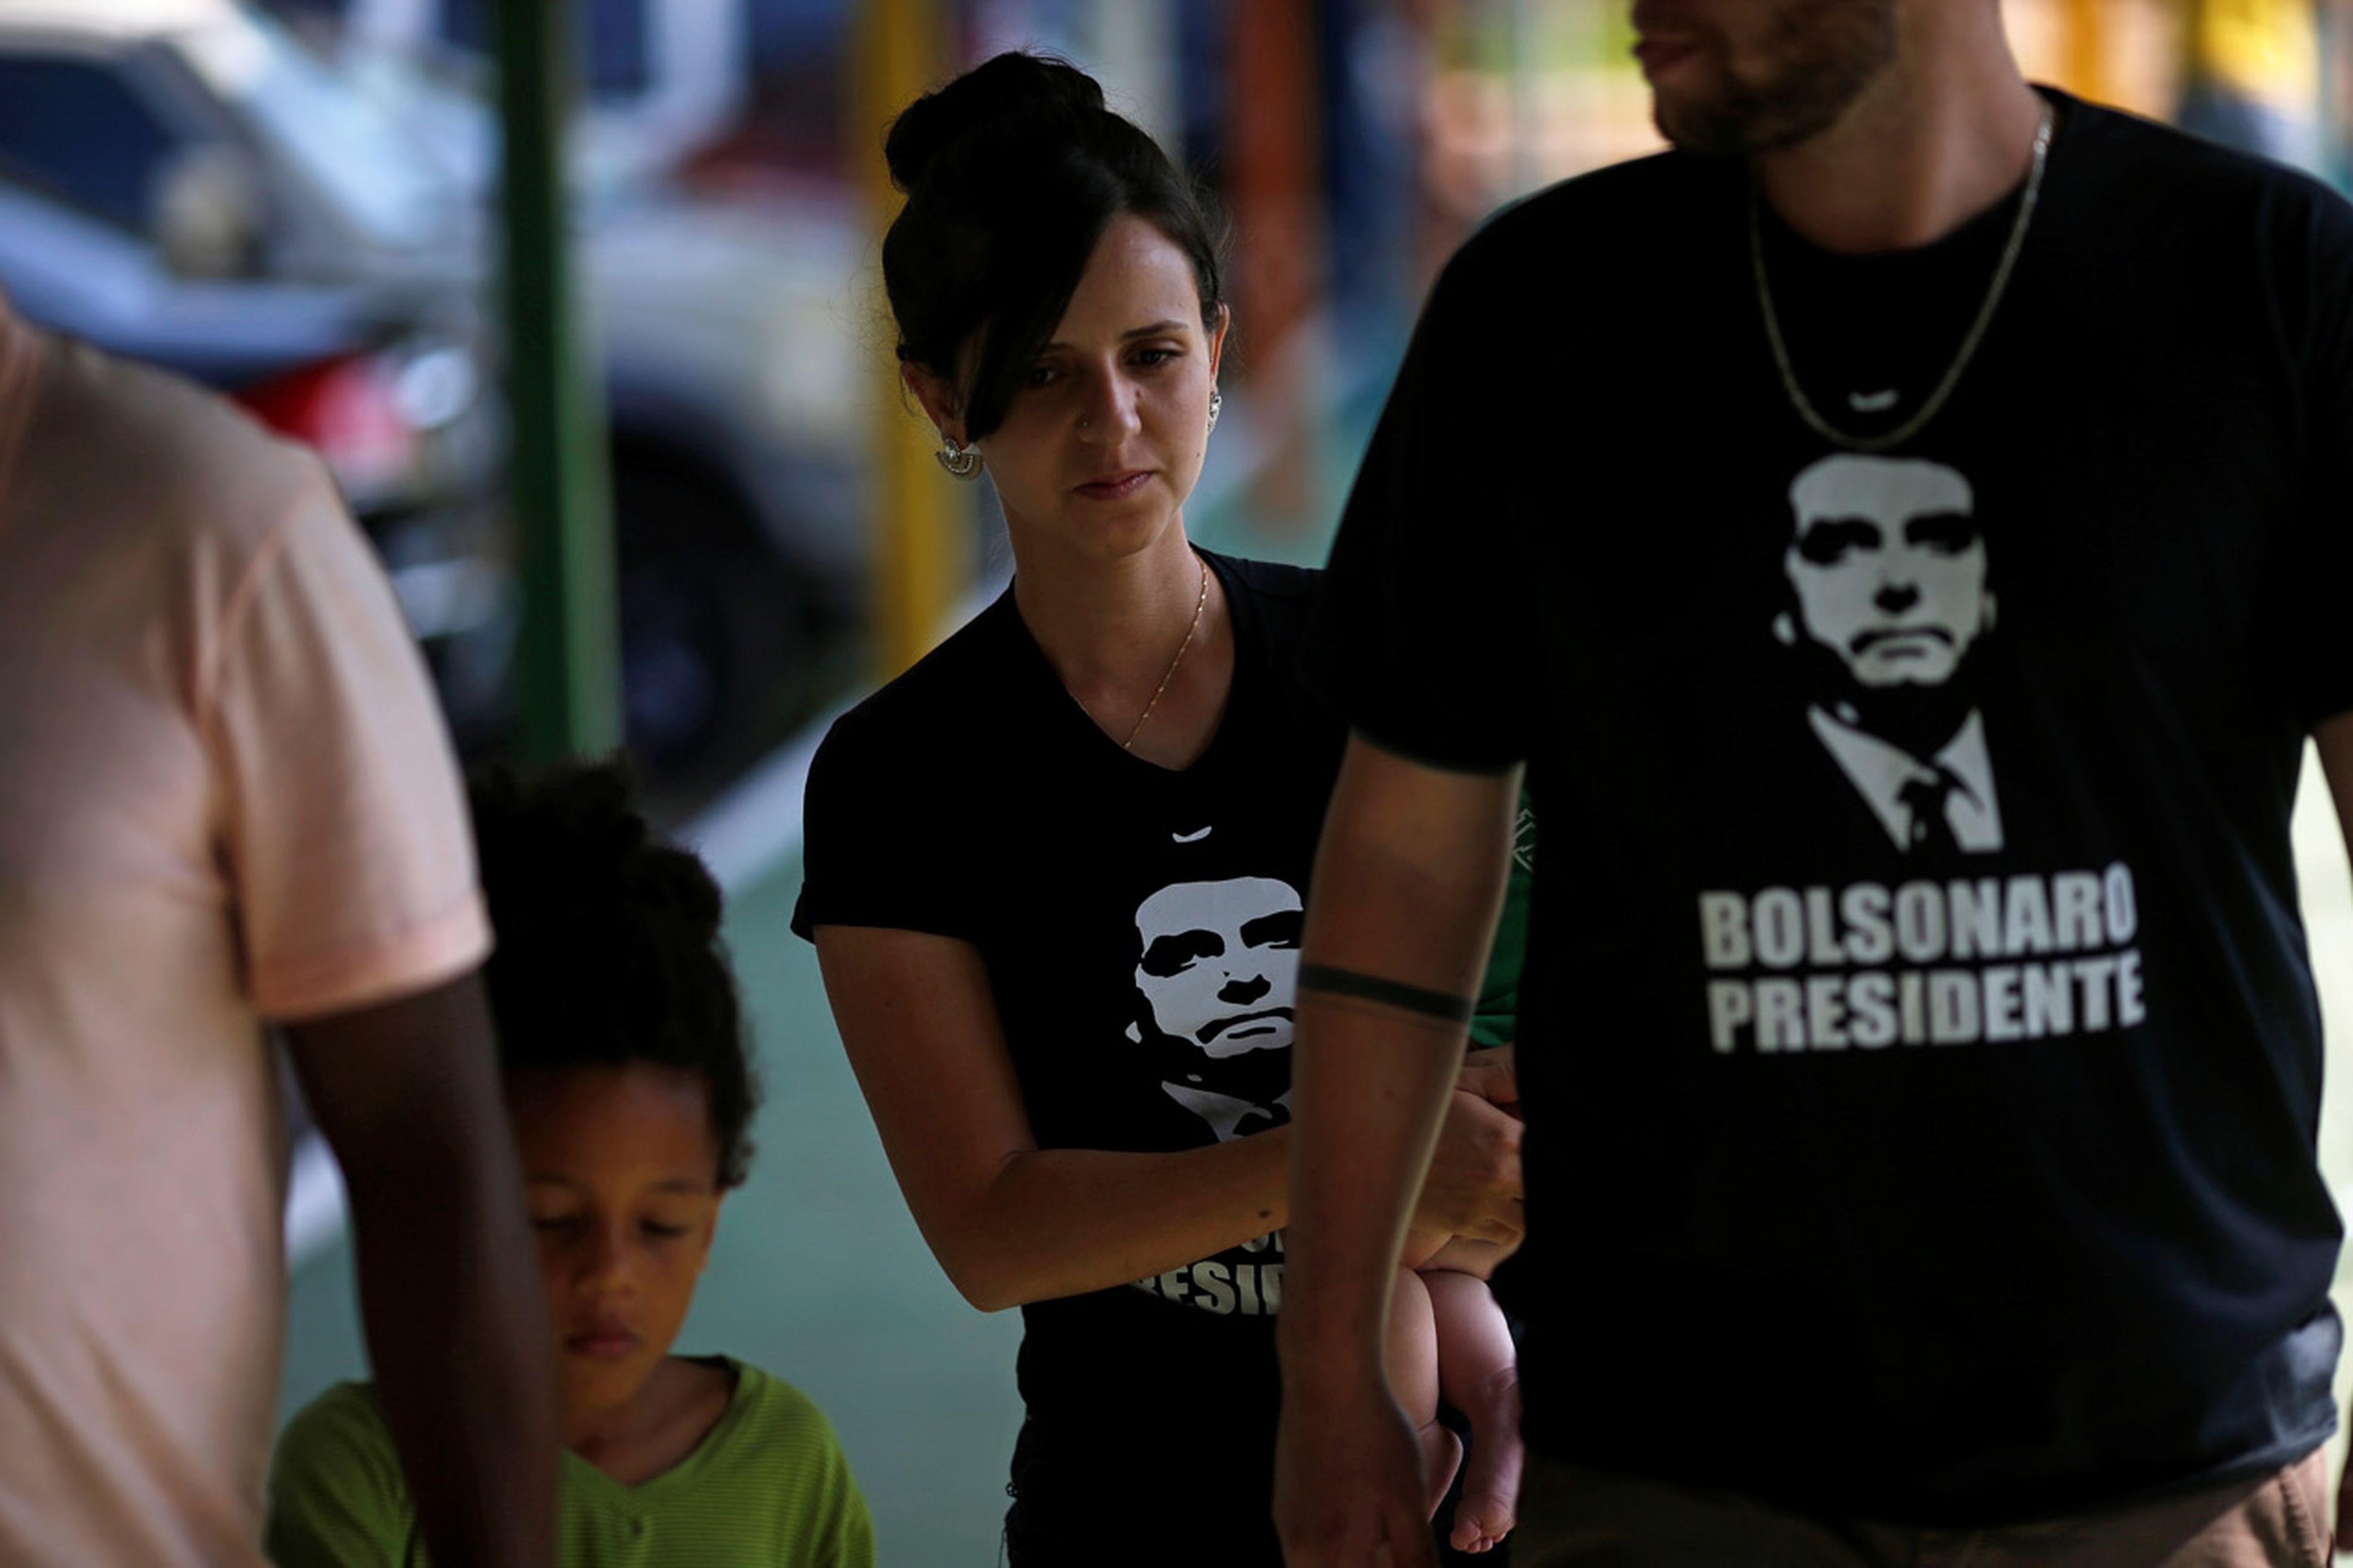 Una mujer pasea con una camiseta en apoyo de Bolsonaro